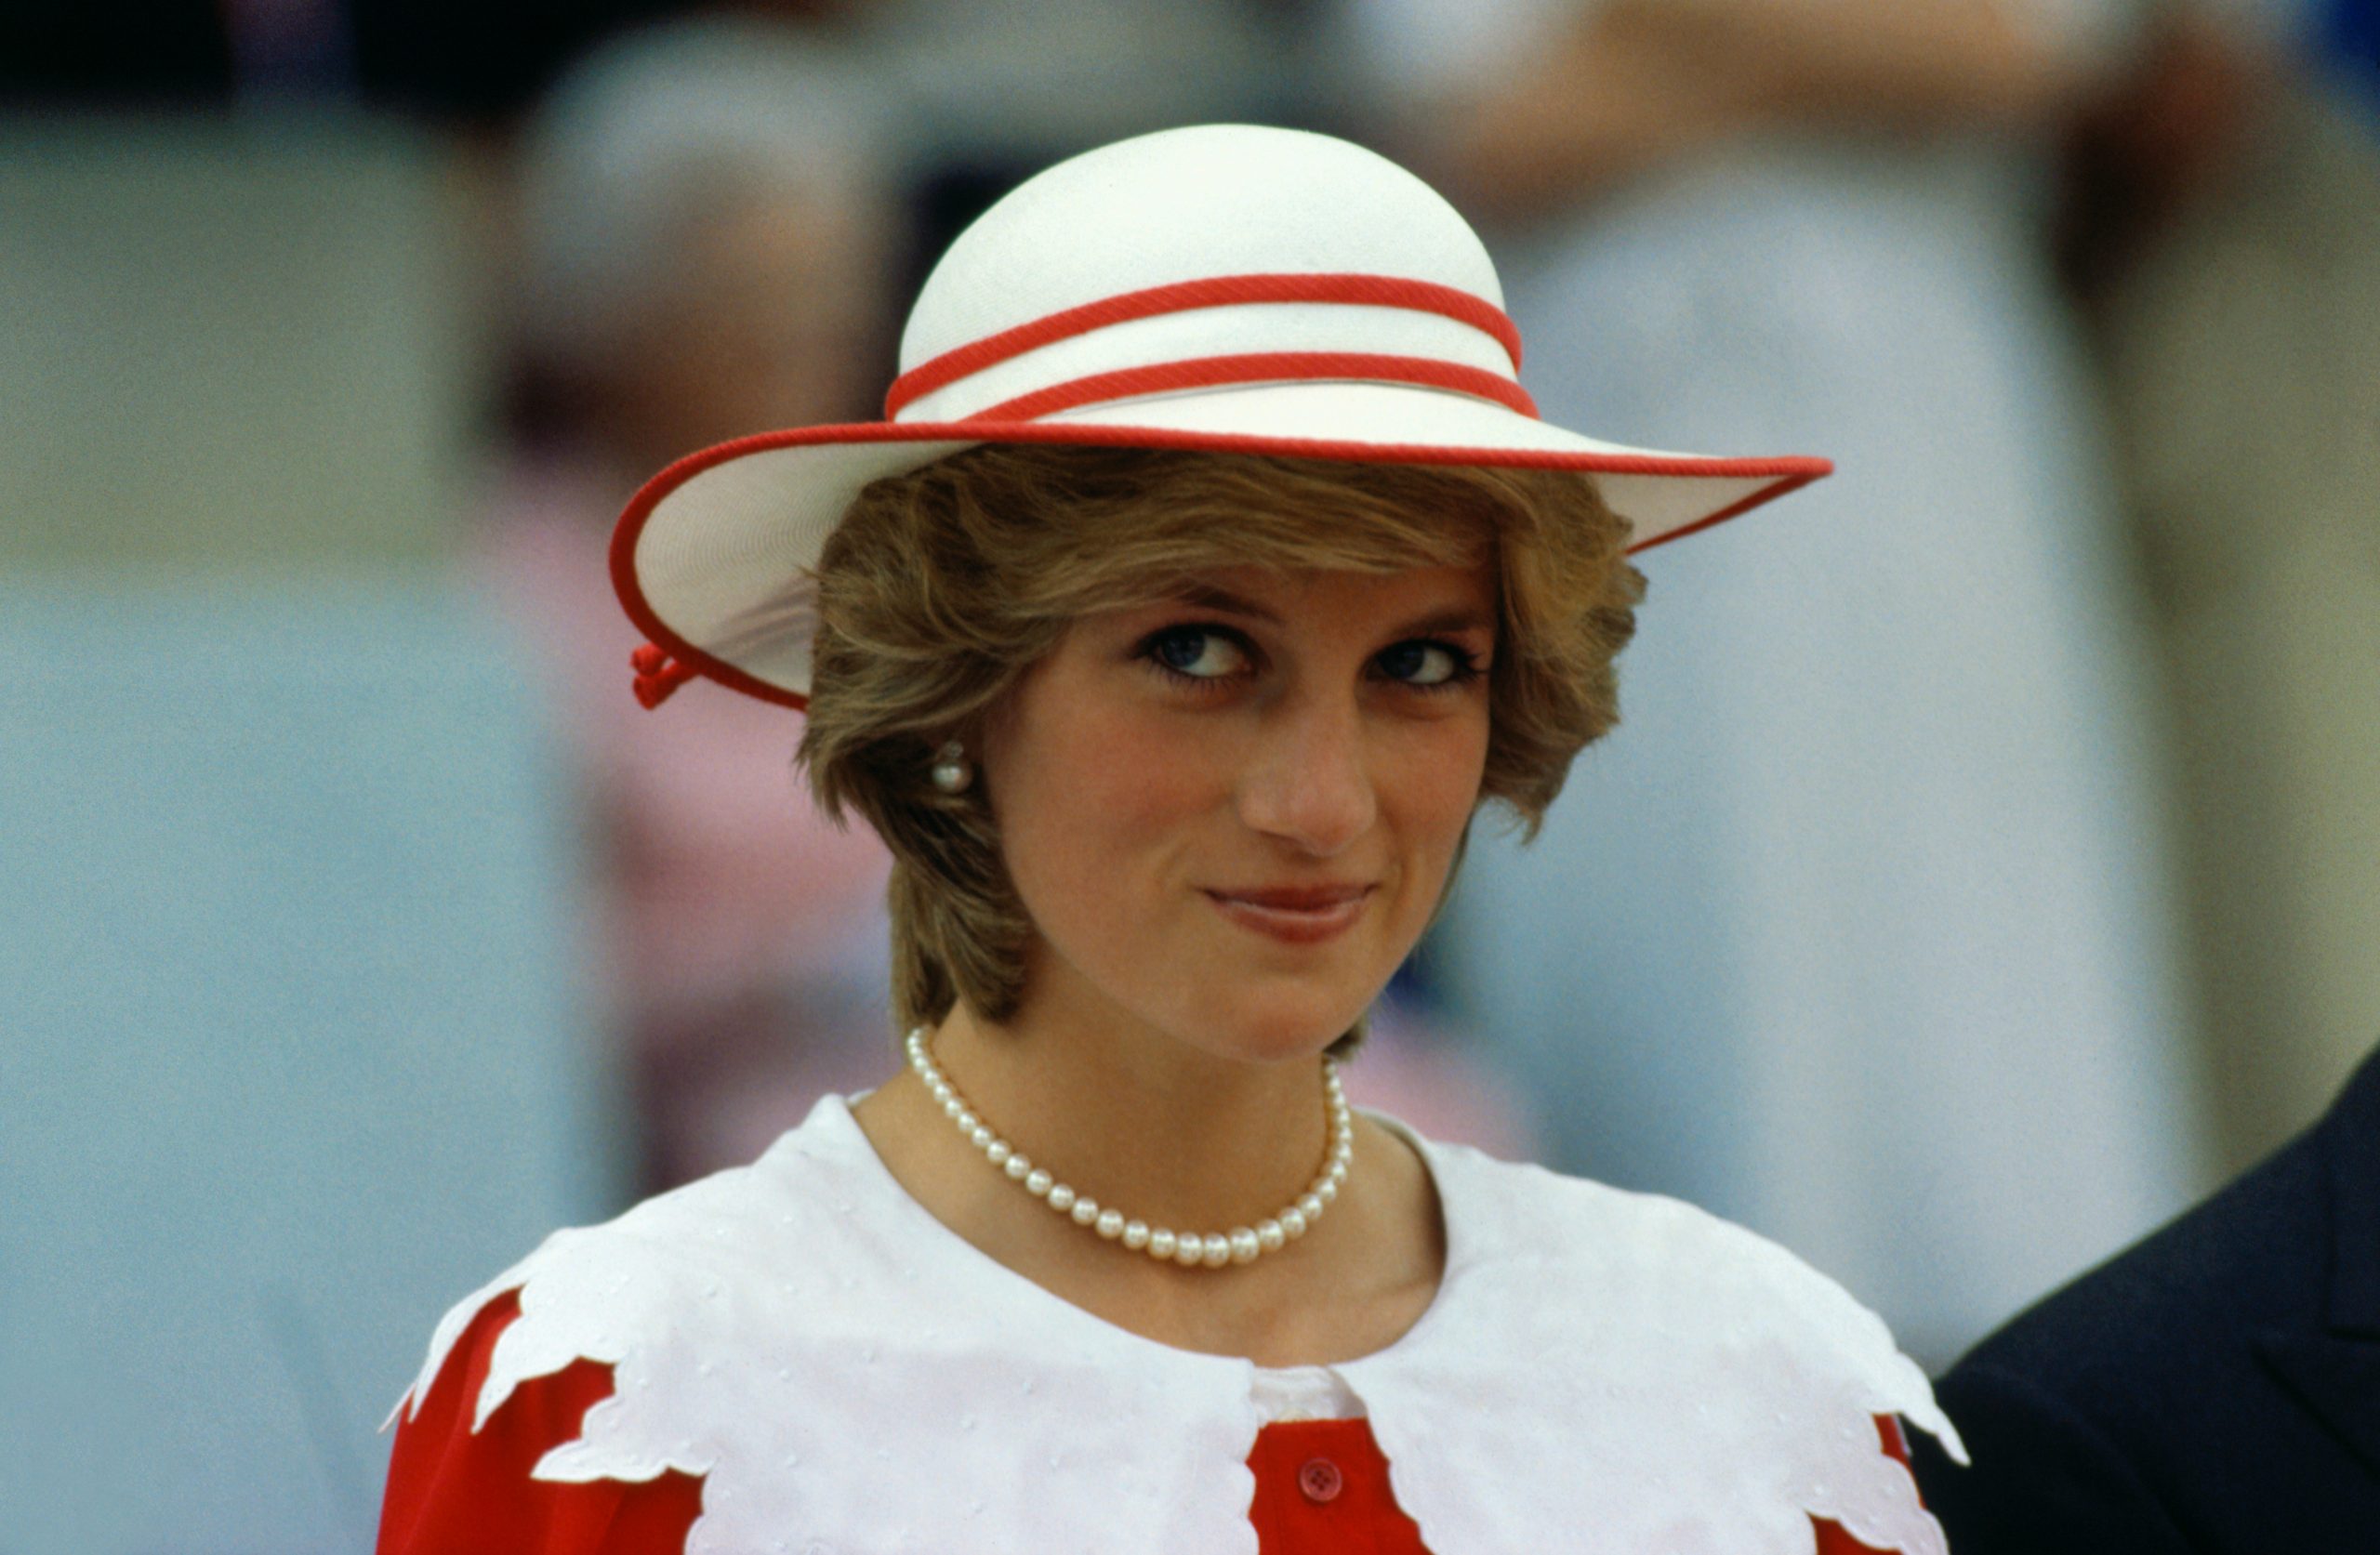 Πριγκίπισσα Diana: Οι εμφανίσεις που έμειναν στην ιστορία!